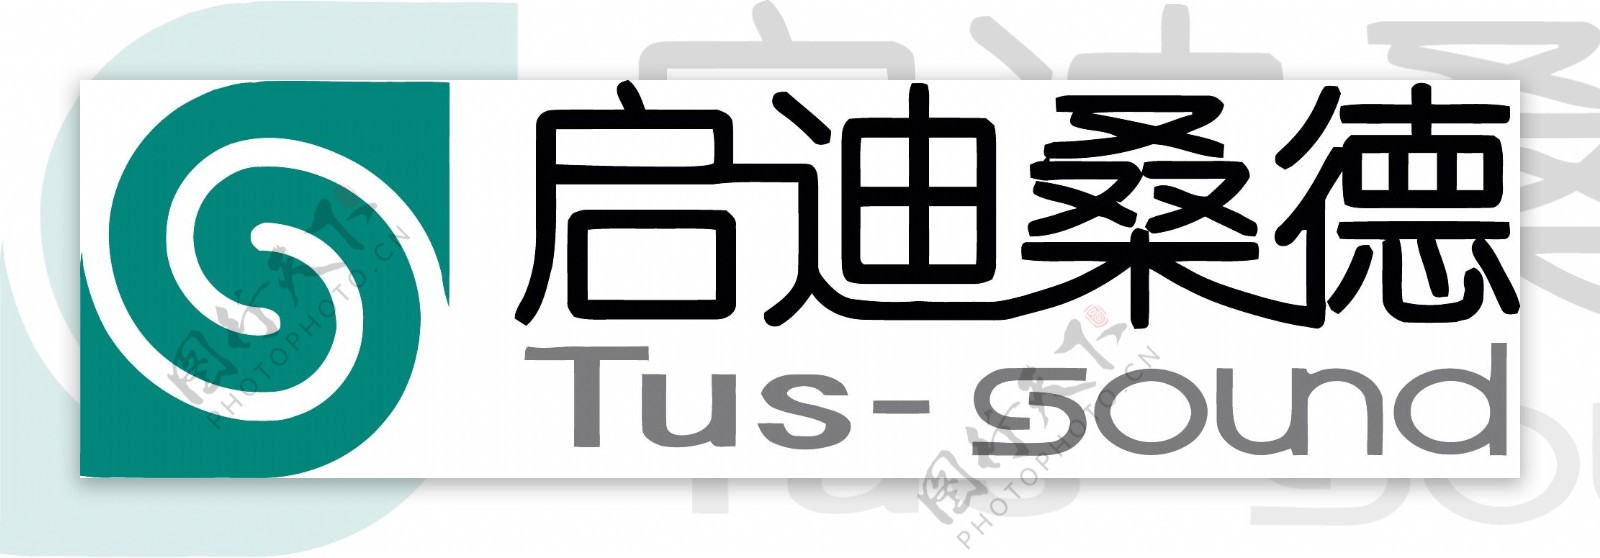 启迪桑德logo